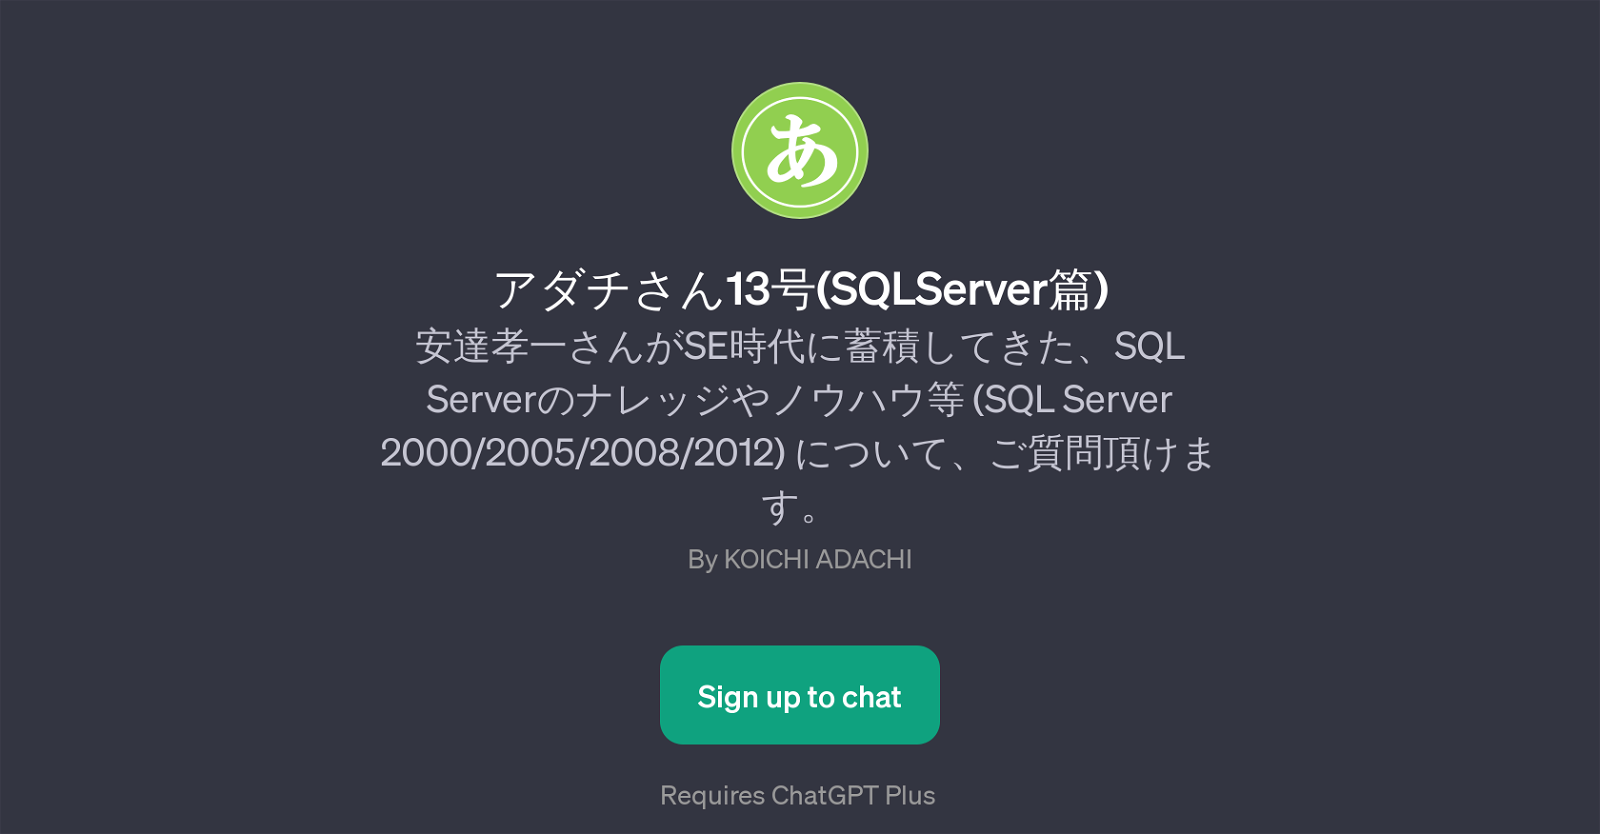 13(SQLServer) website